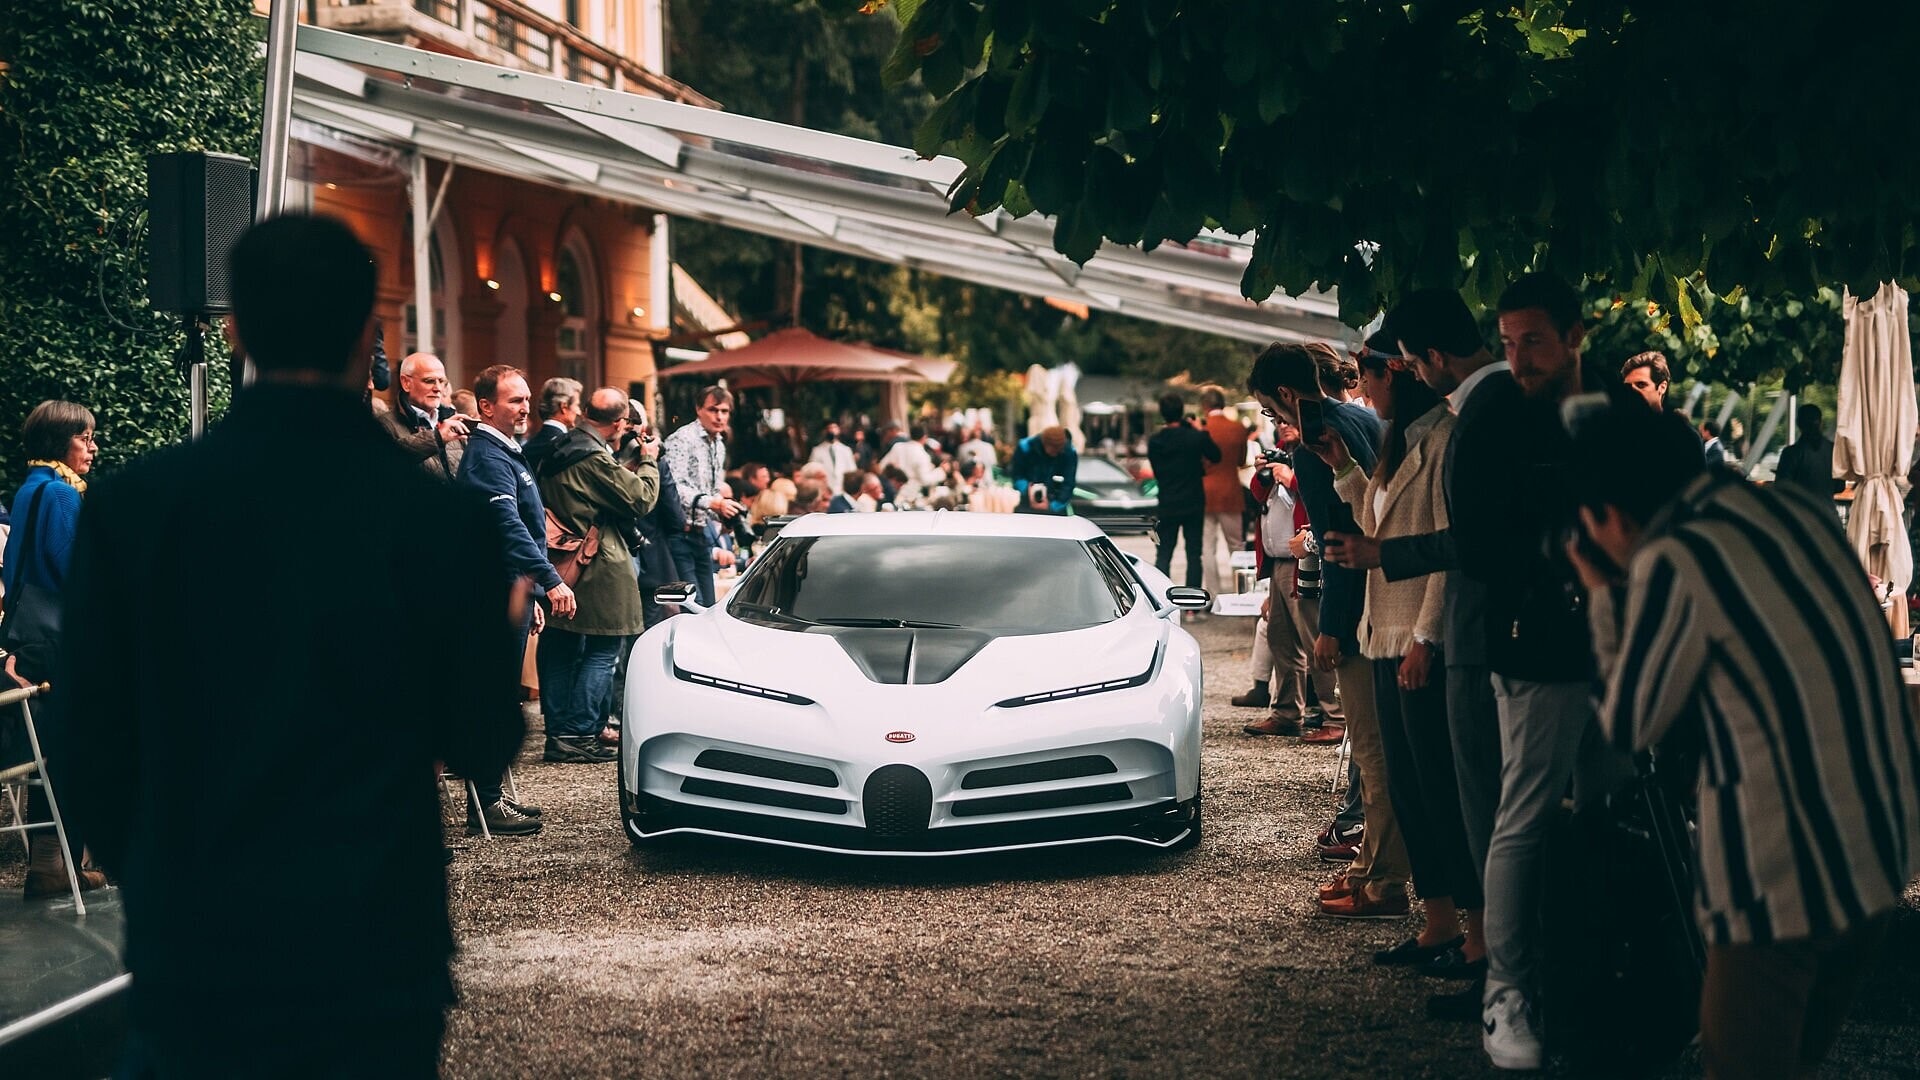 Bugatti Chiron For Sale in Miami, FL